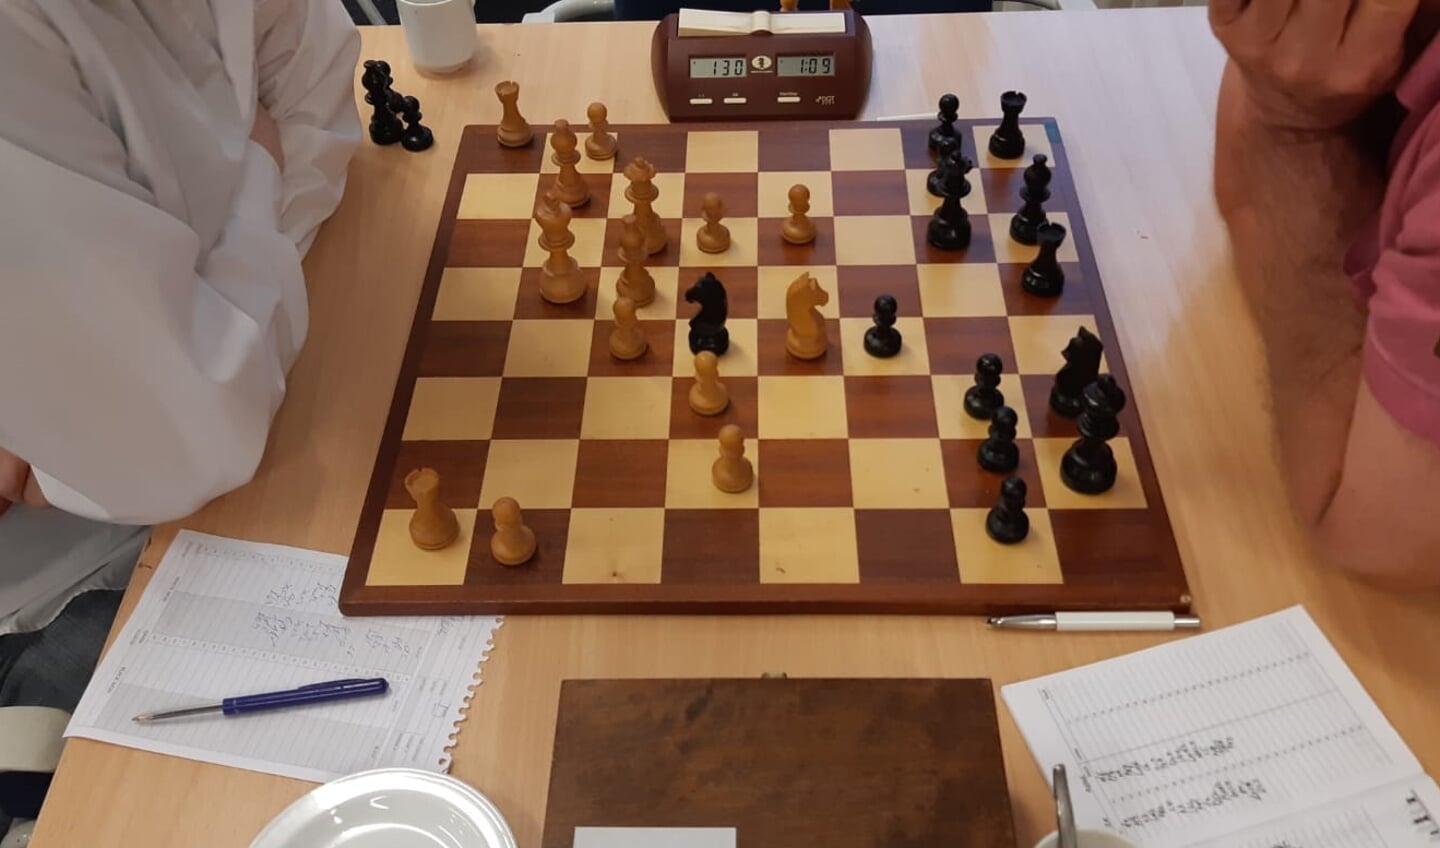 Cruciale stand: Bakker heeft Pe4 gespeeld, met aftrekschaak.